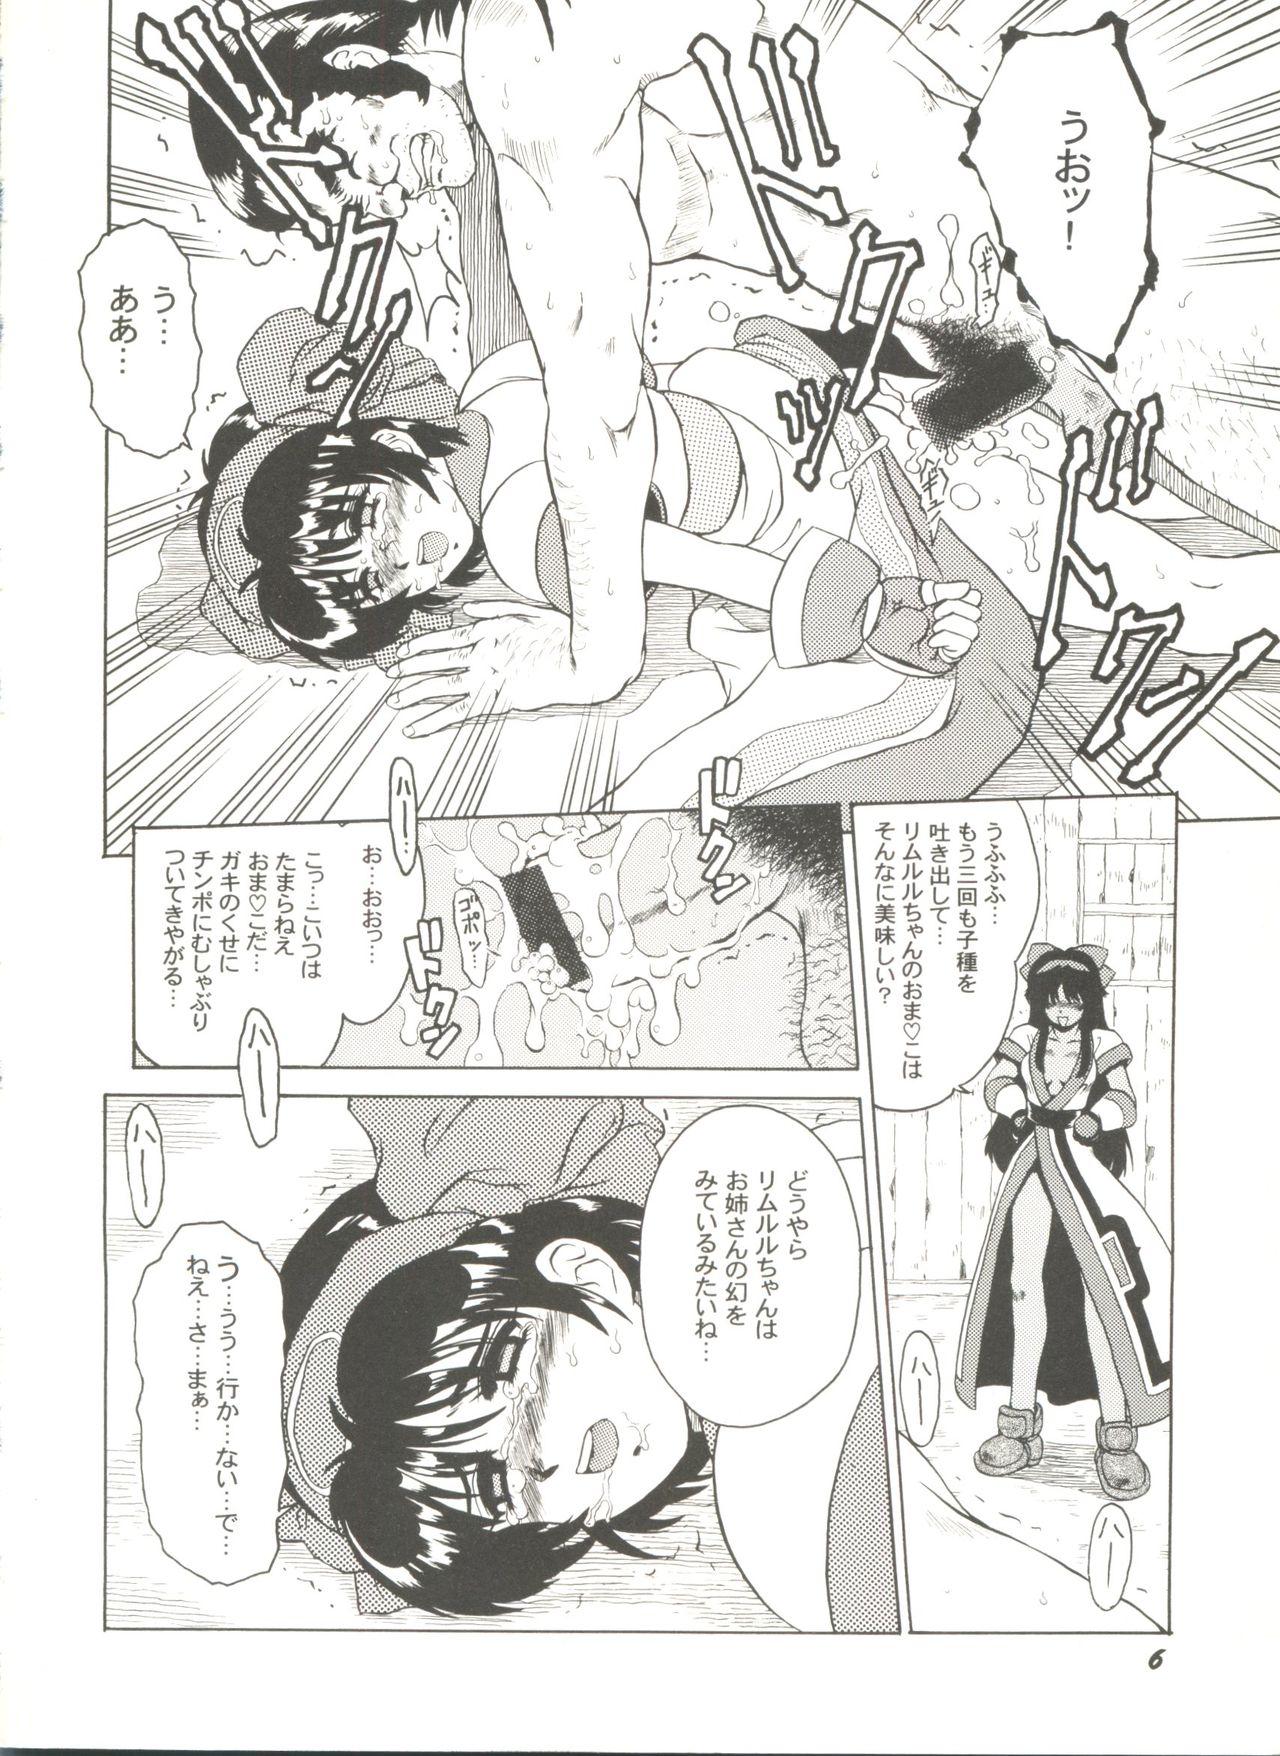 Shemale Porn Doujin Anthology Bishoujo Gumi 8 - Samurai spirits Sakura taisen Battle athletes Socks - Page 10